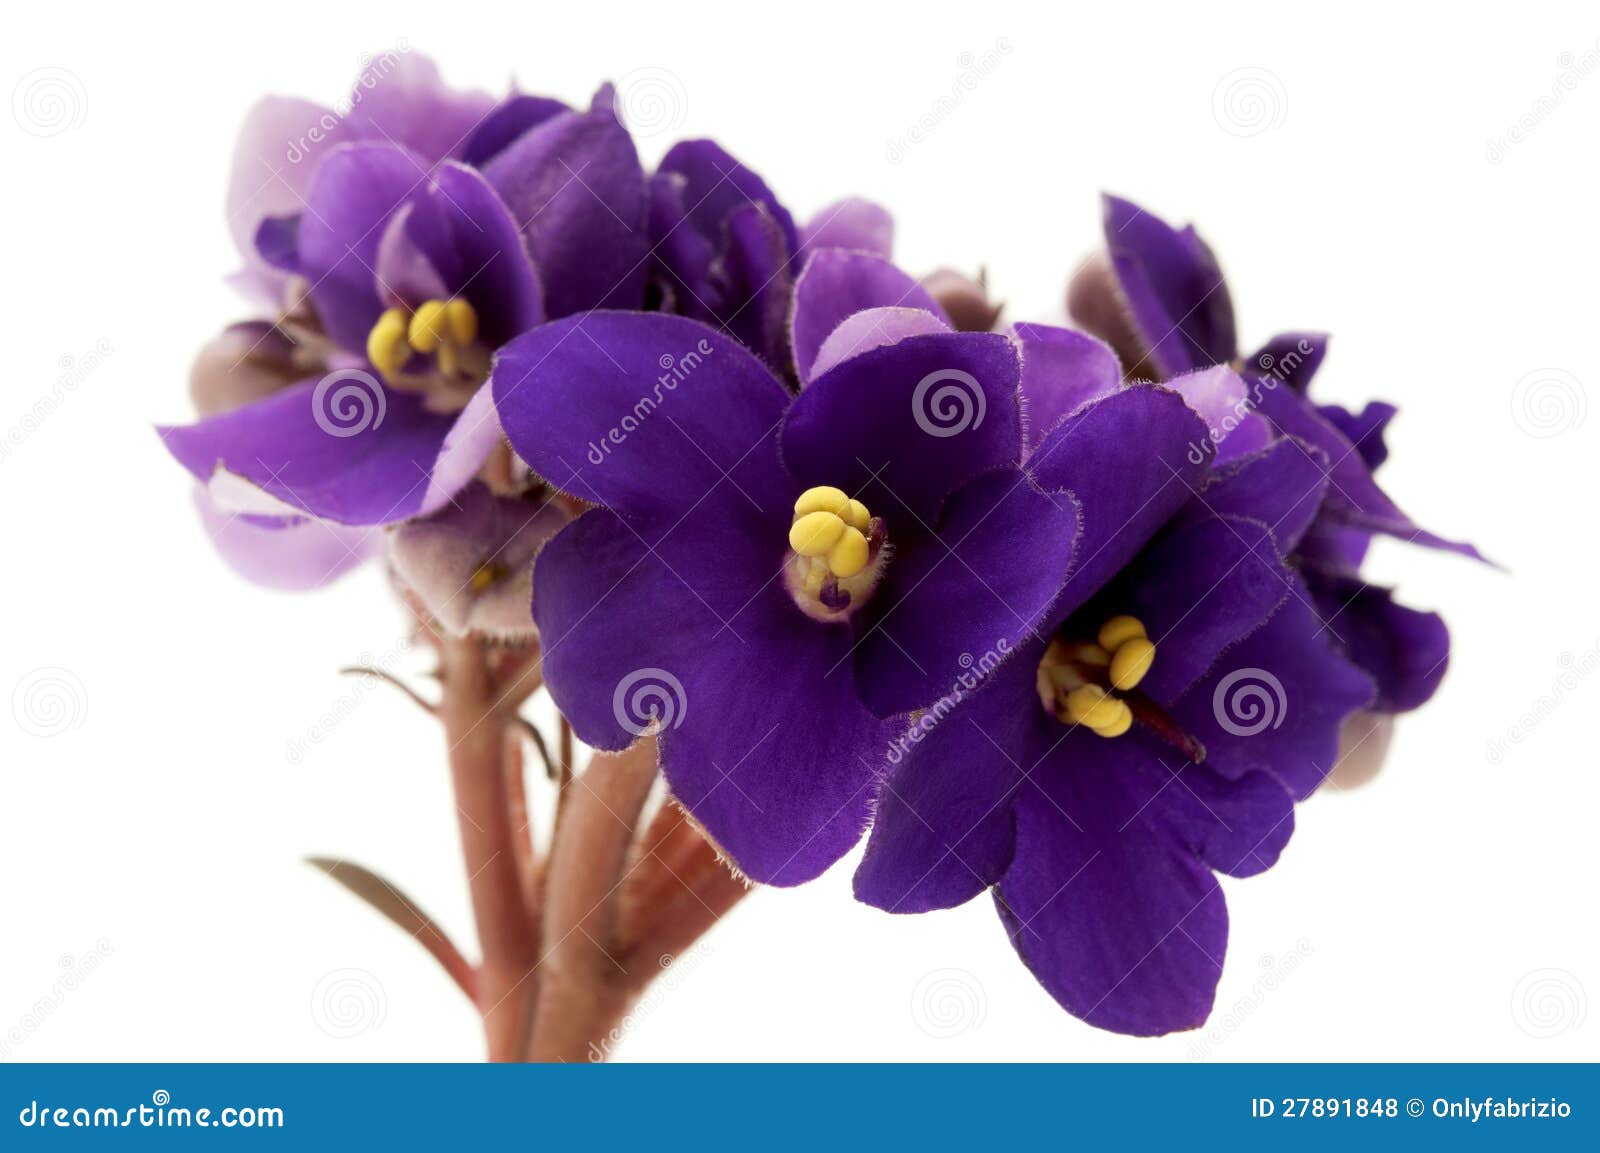 african violet